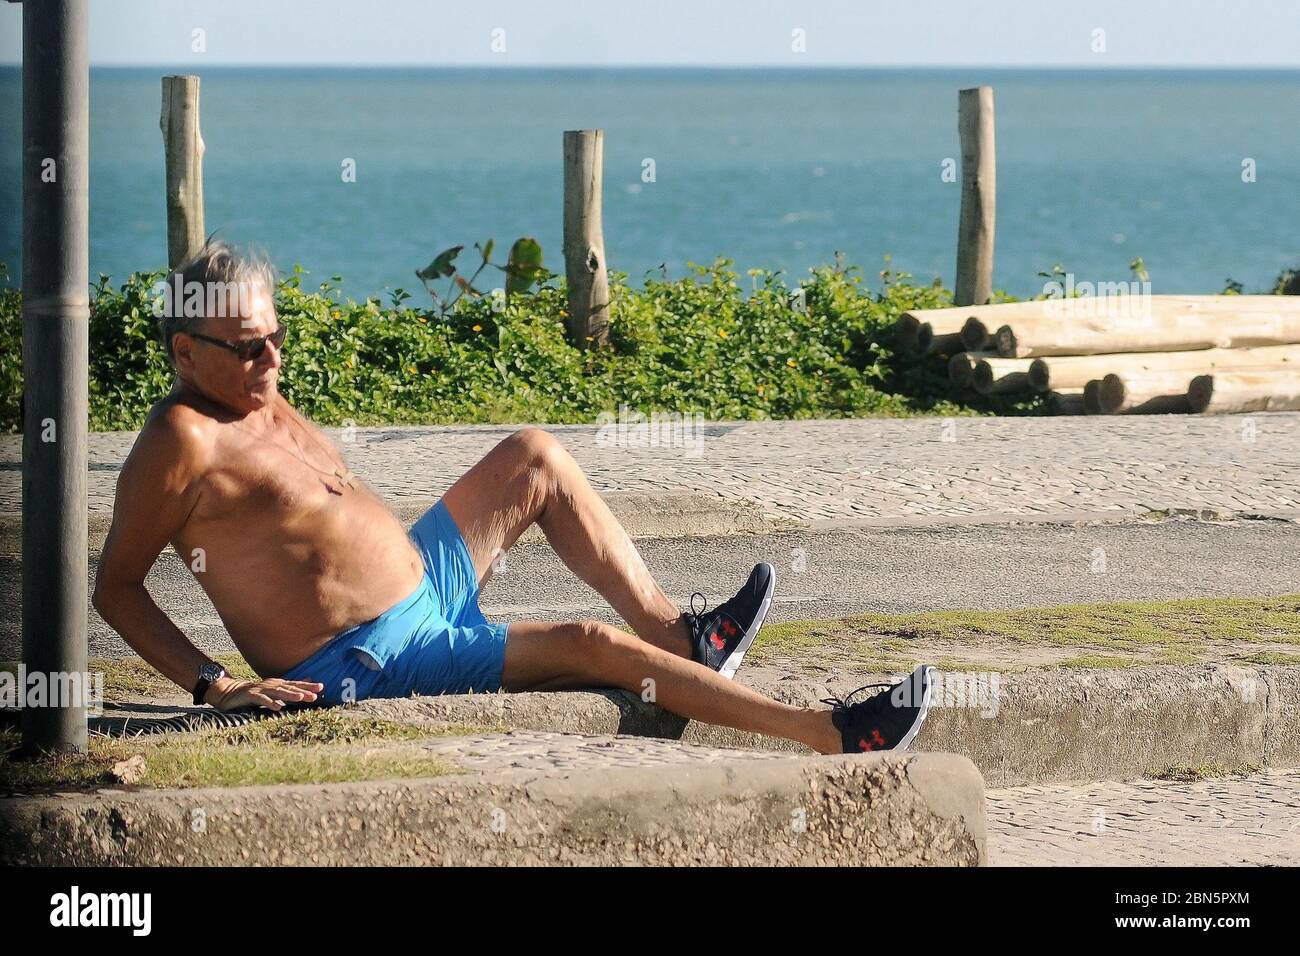 Rio de Janeiro, Brasilien, 11. Mai 2020. Älterer Mann ohne Schutzmaske während der COVID-19 Pandemie stolpert er und fällt auf den Bürgersteig Boden Stockfoto